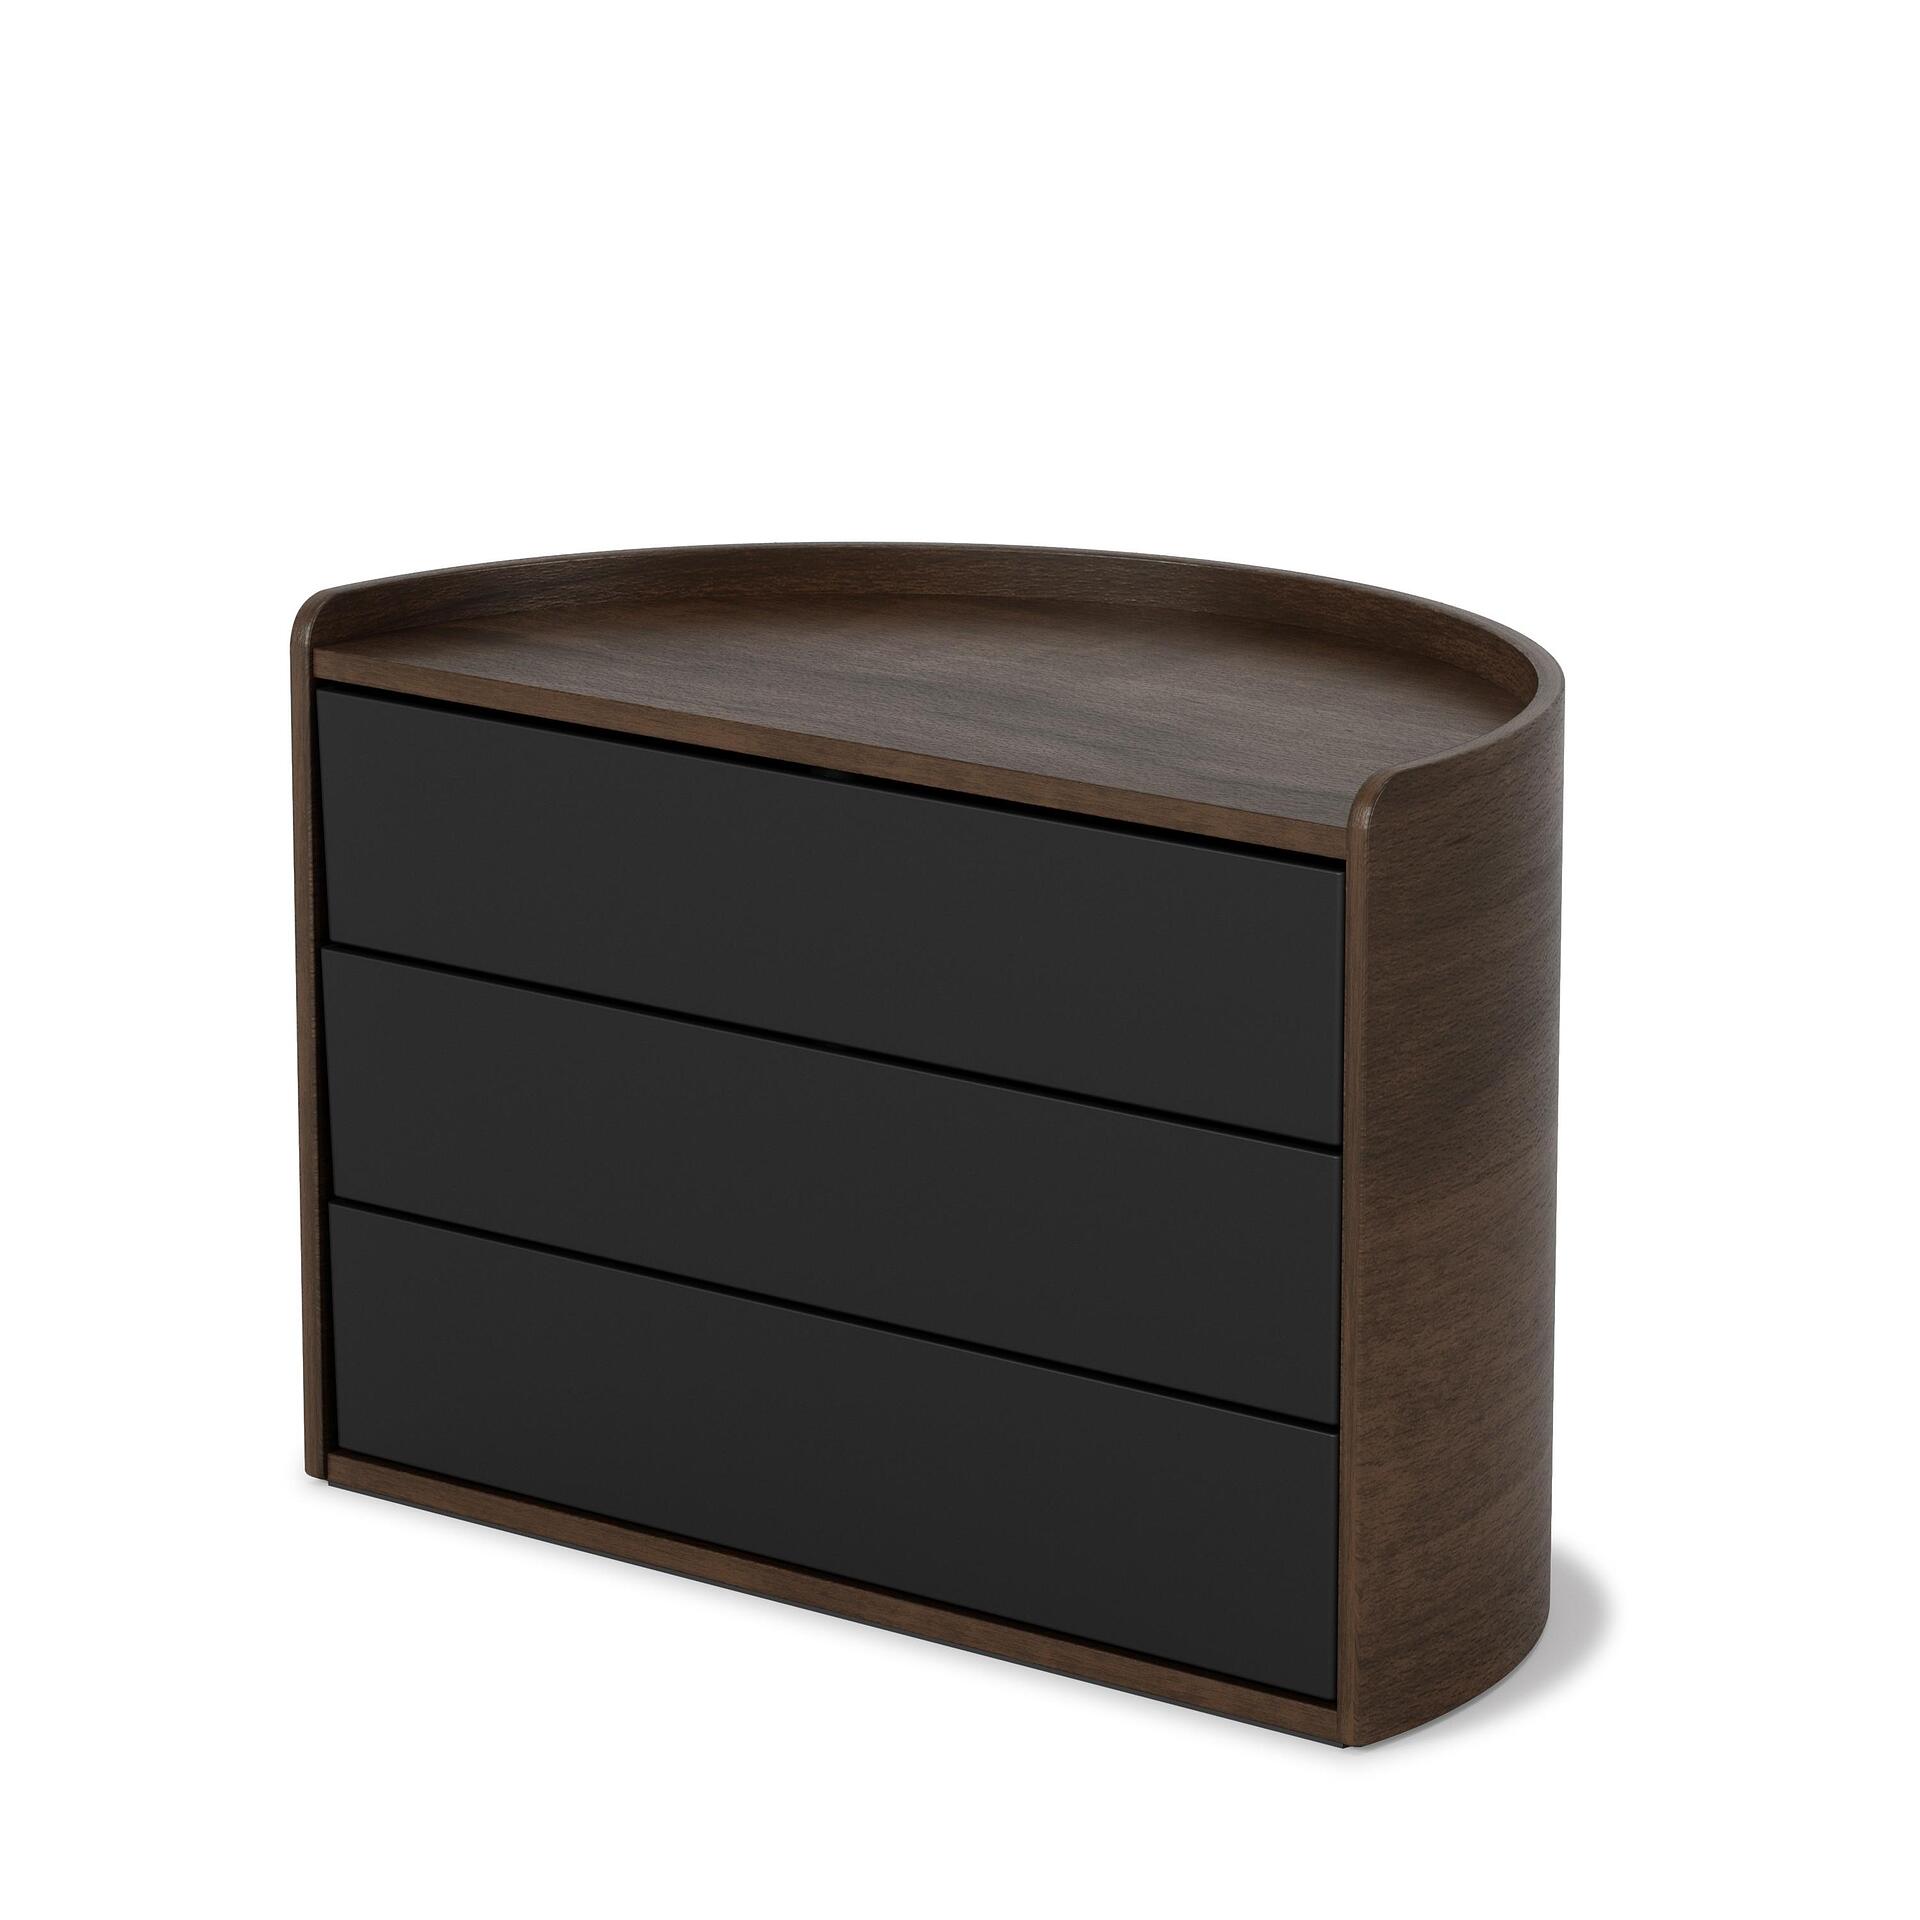 UMBRA Кутия за бижута и аксесоари “MOONA“ - цвят черен / орех